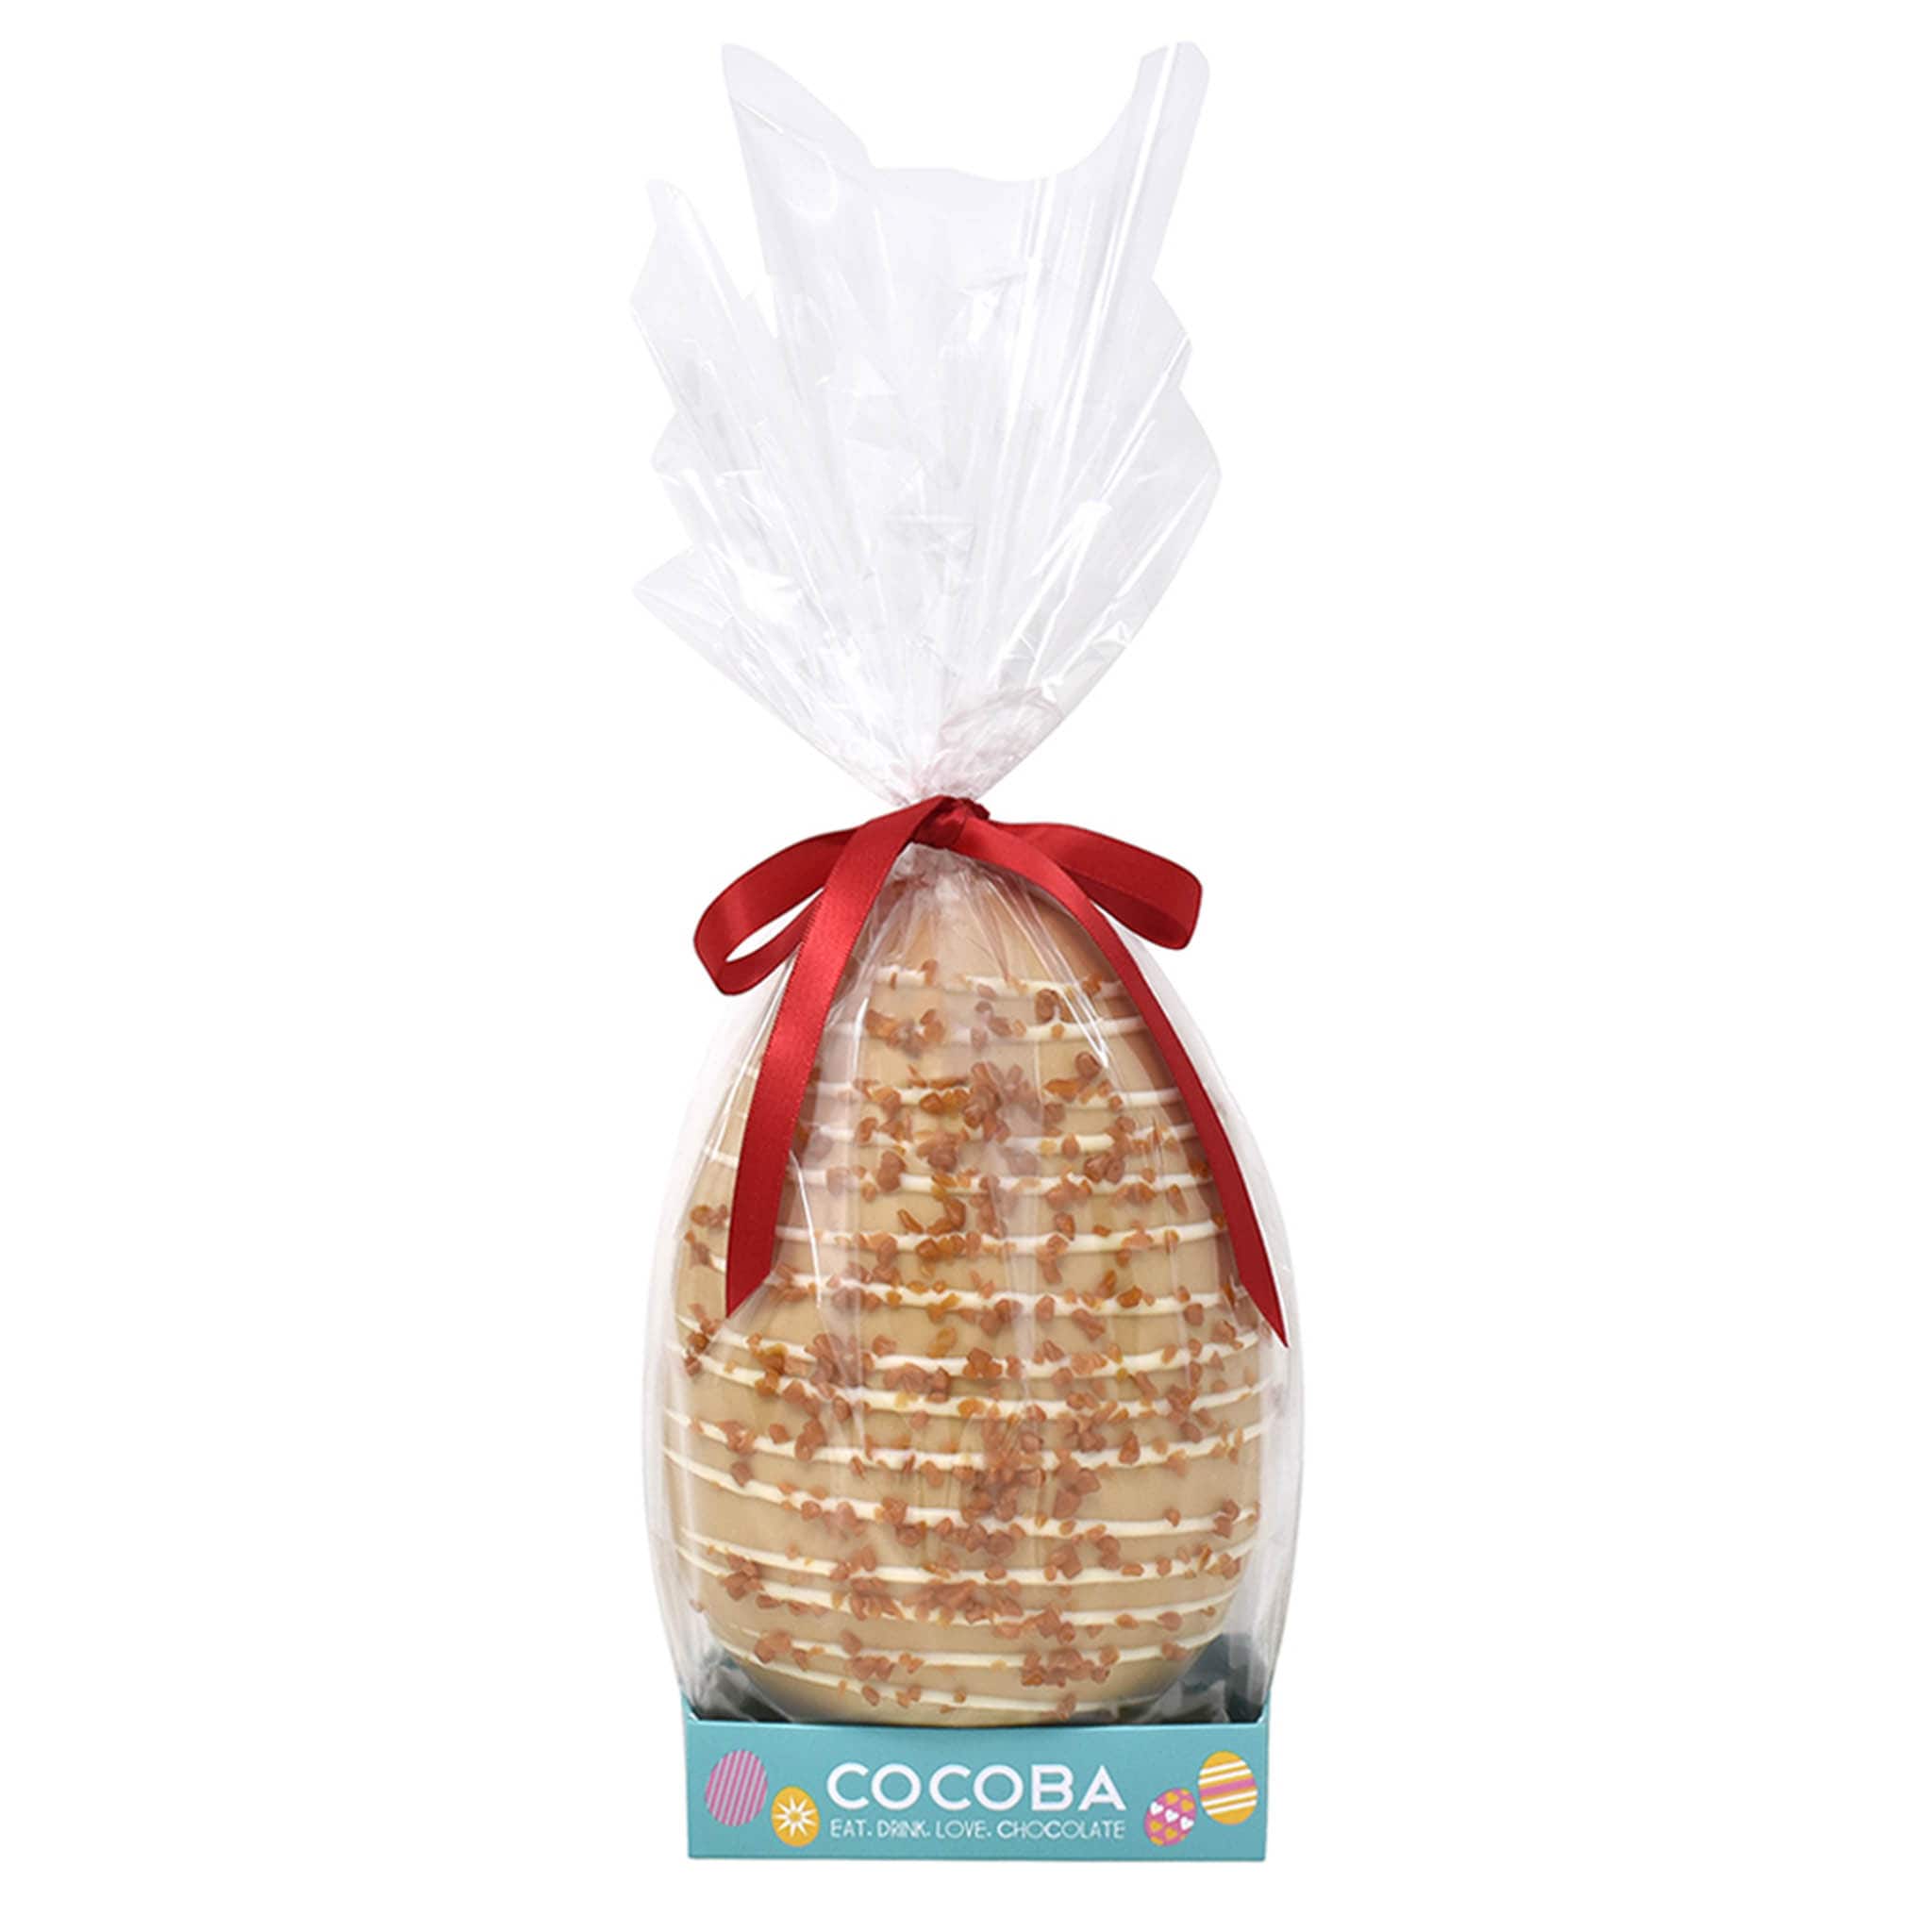 Cocoba Caramel Easter Egg, 250g